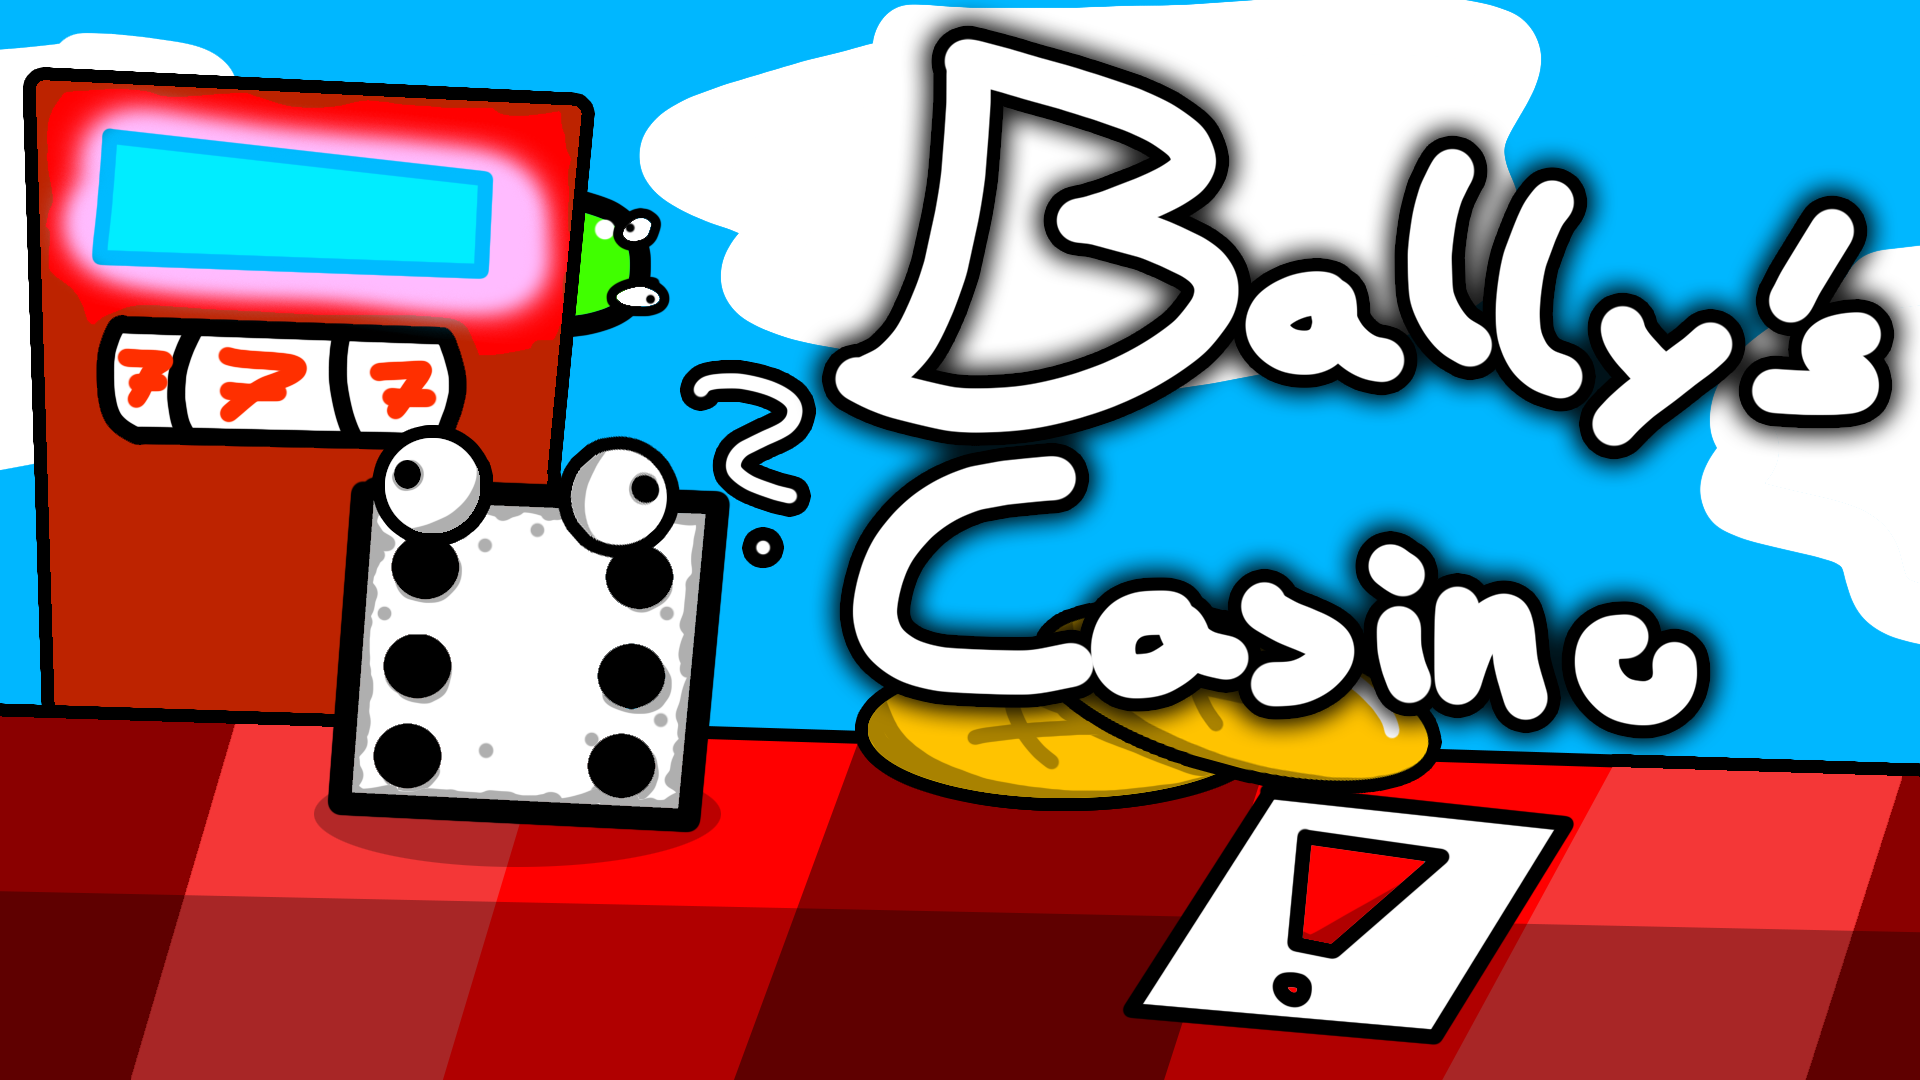 Bally's Casino